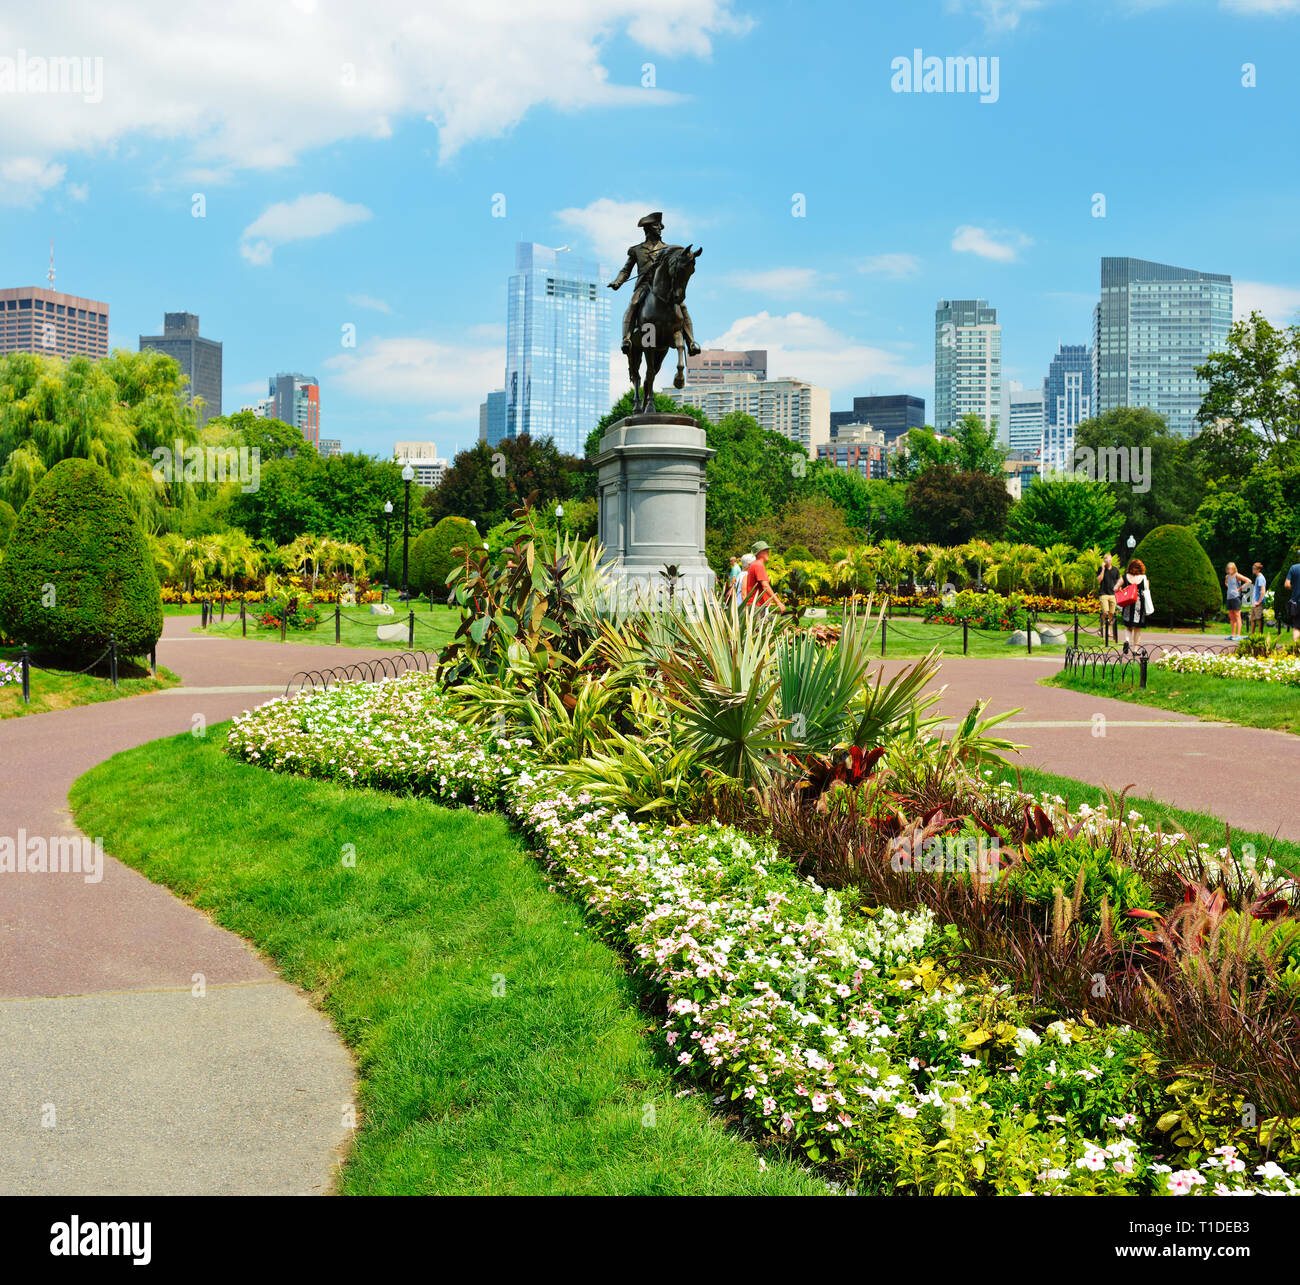 Boston Public Garden im Sommer. Gartenanlagen, Washington Statue und City Skyline im Hintergrund Stockfoto